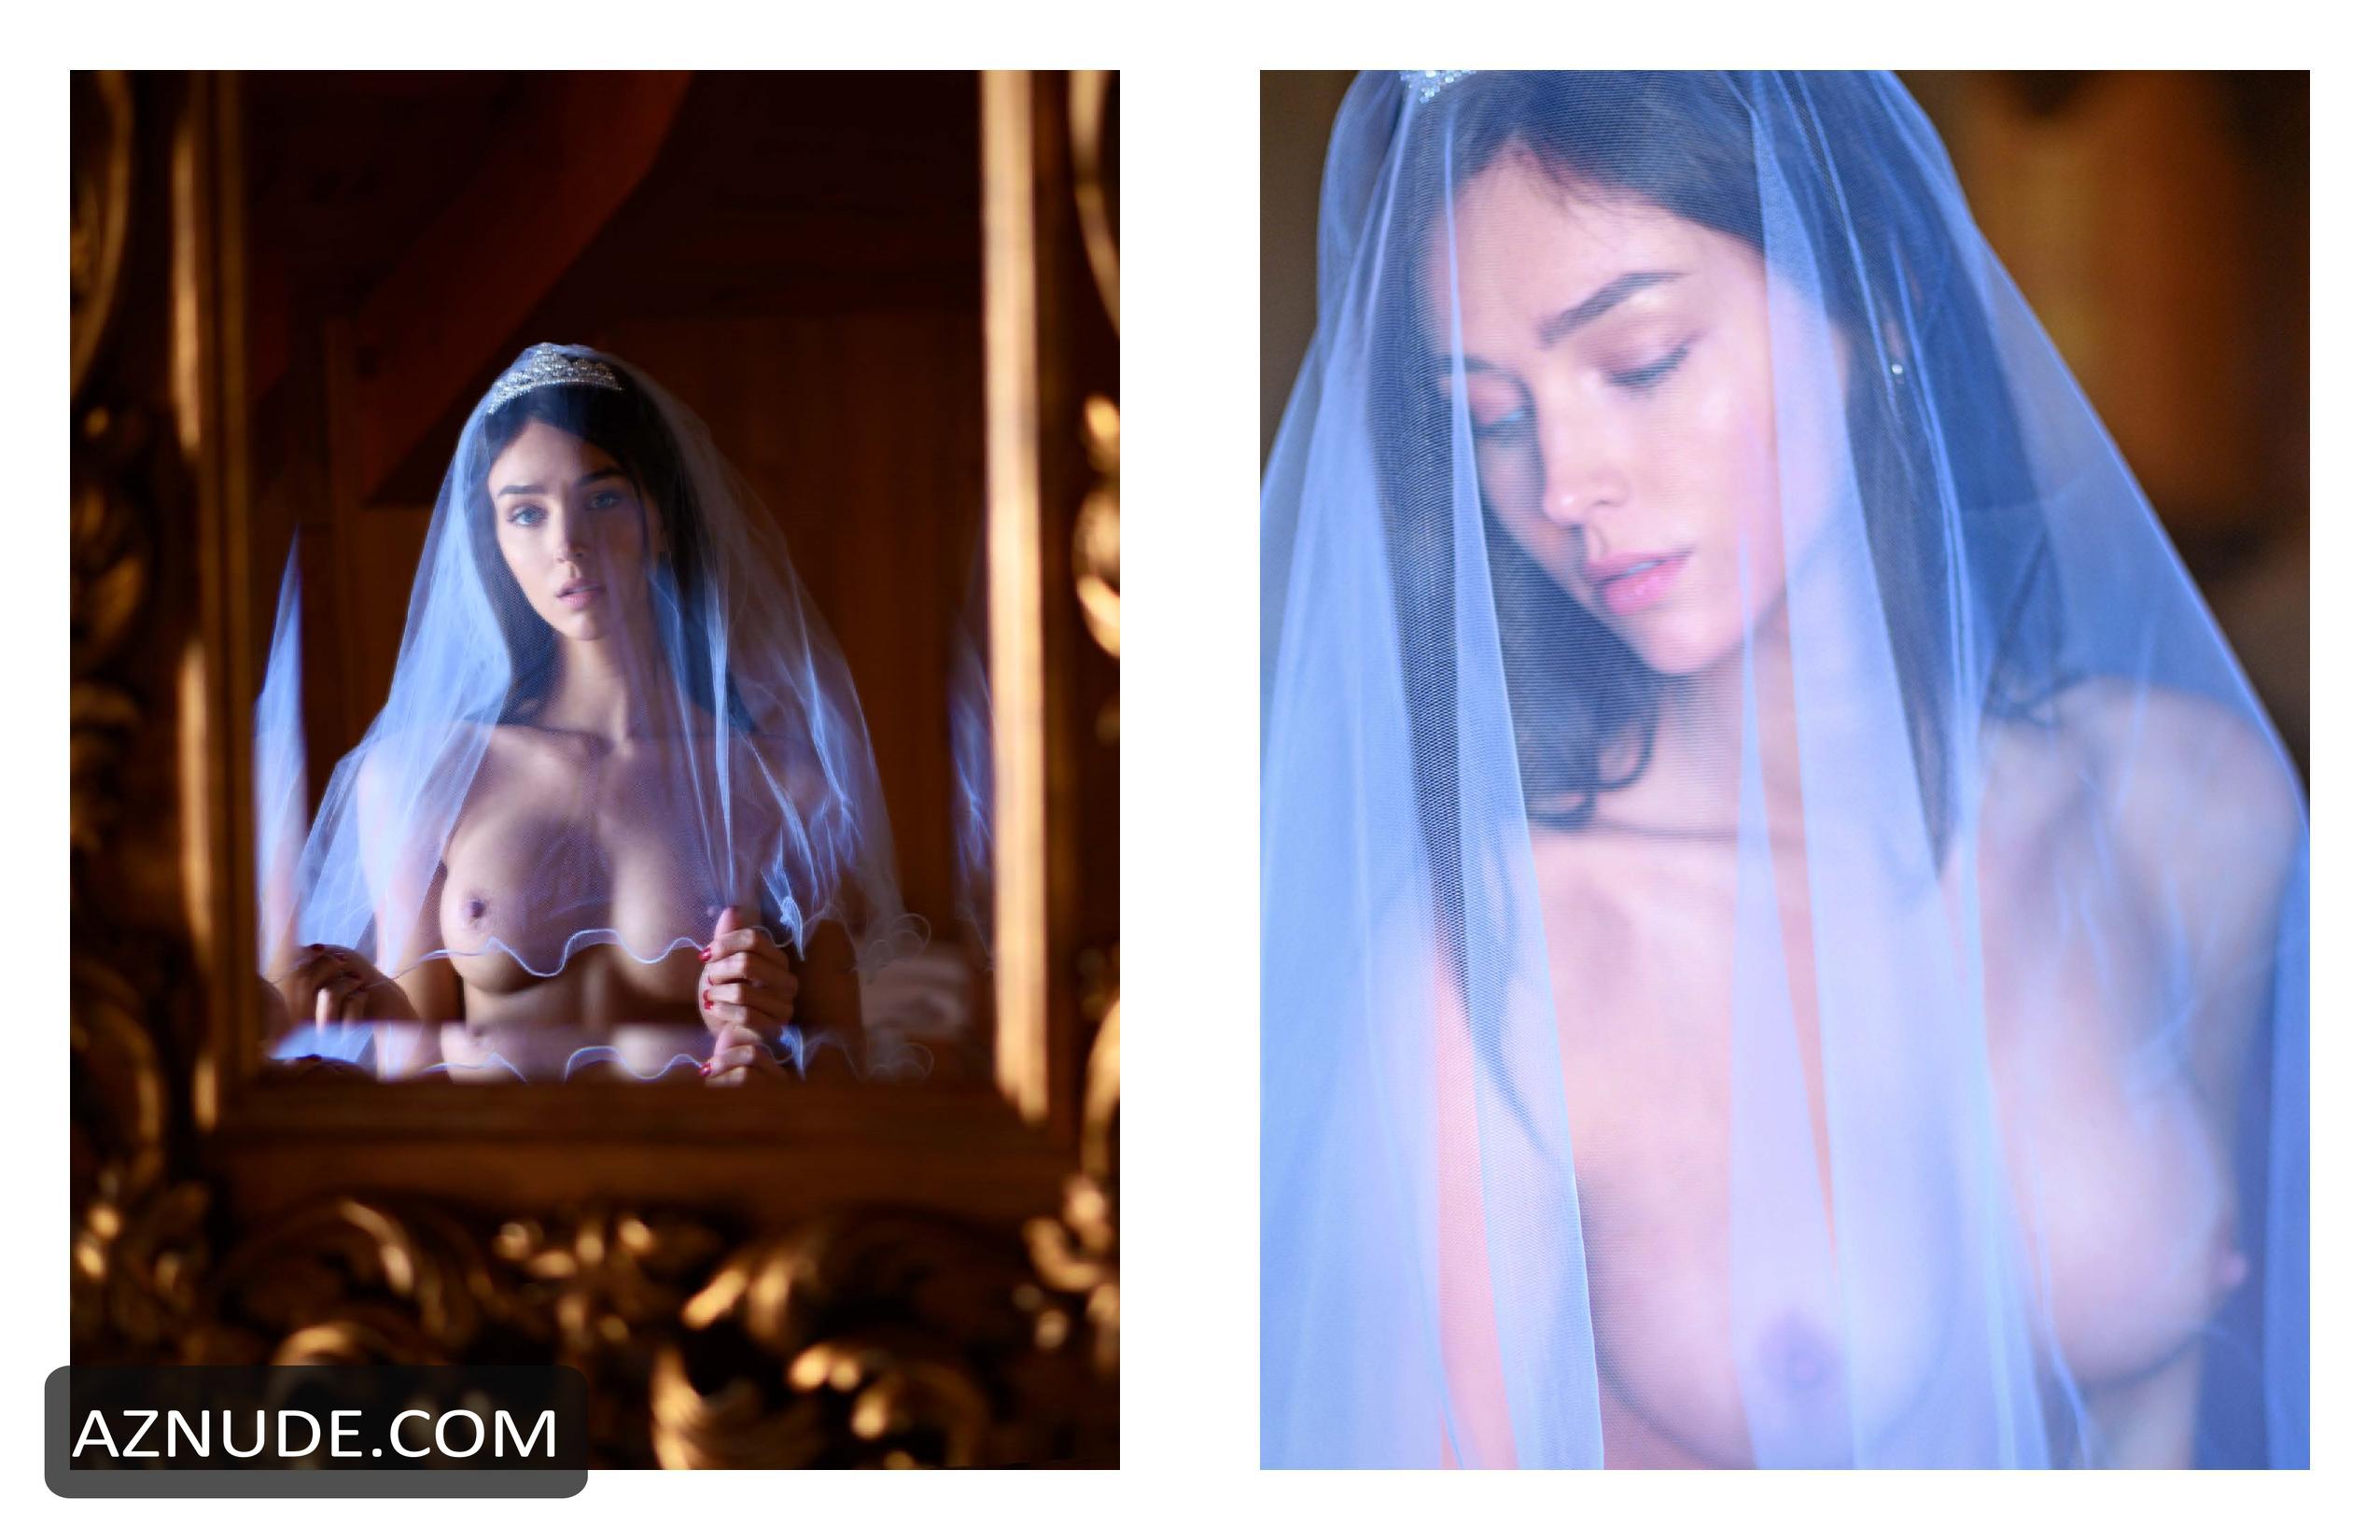 Rachel Cook Photos As A Naked Bride For Nirvana Magazine